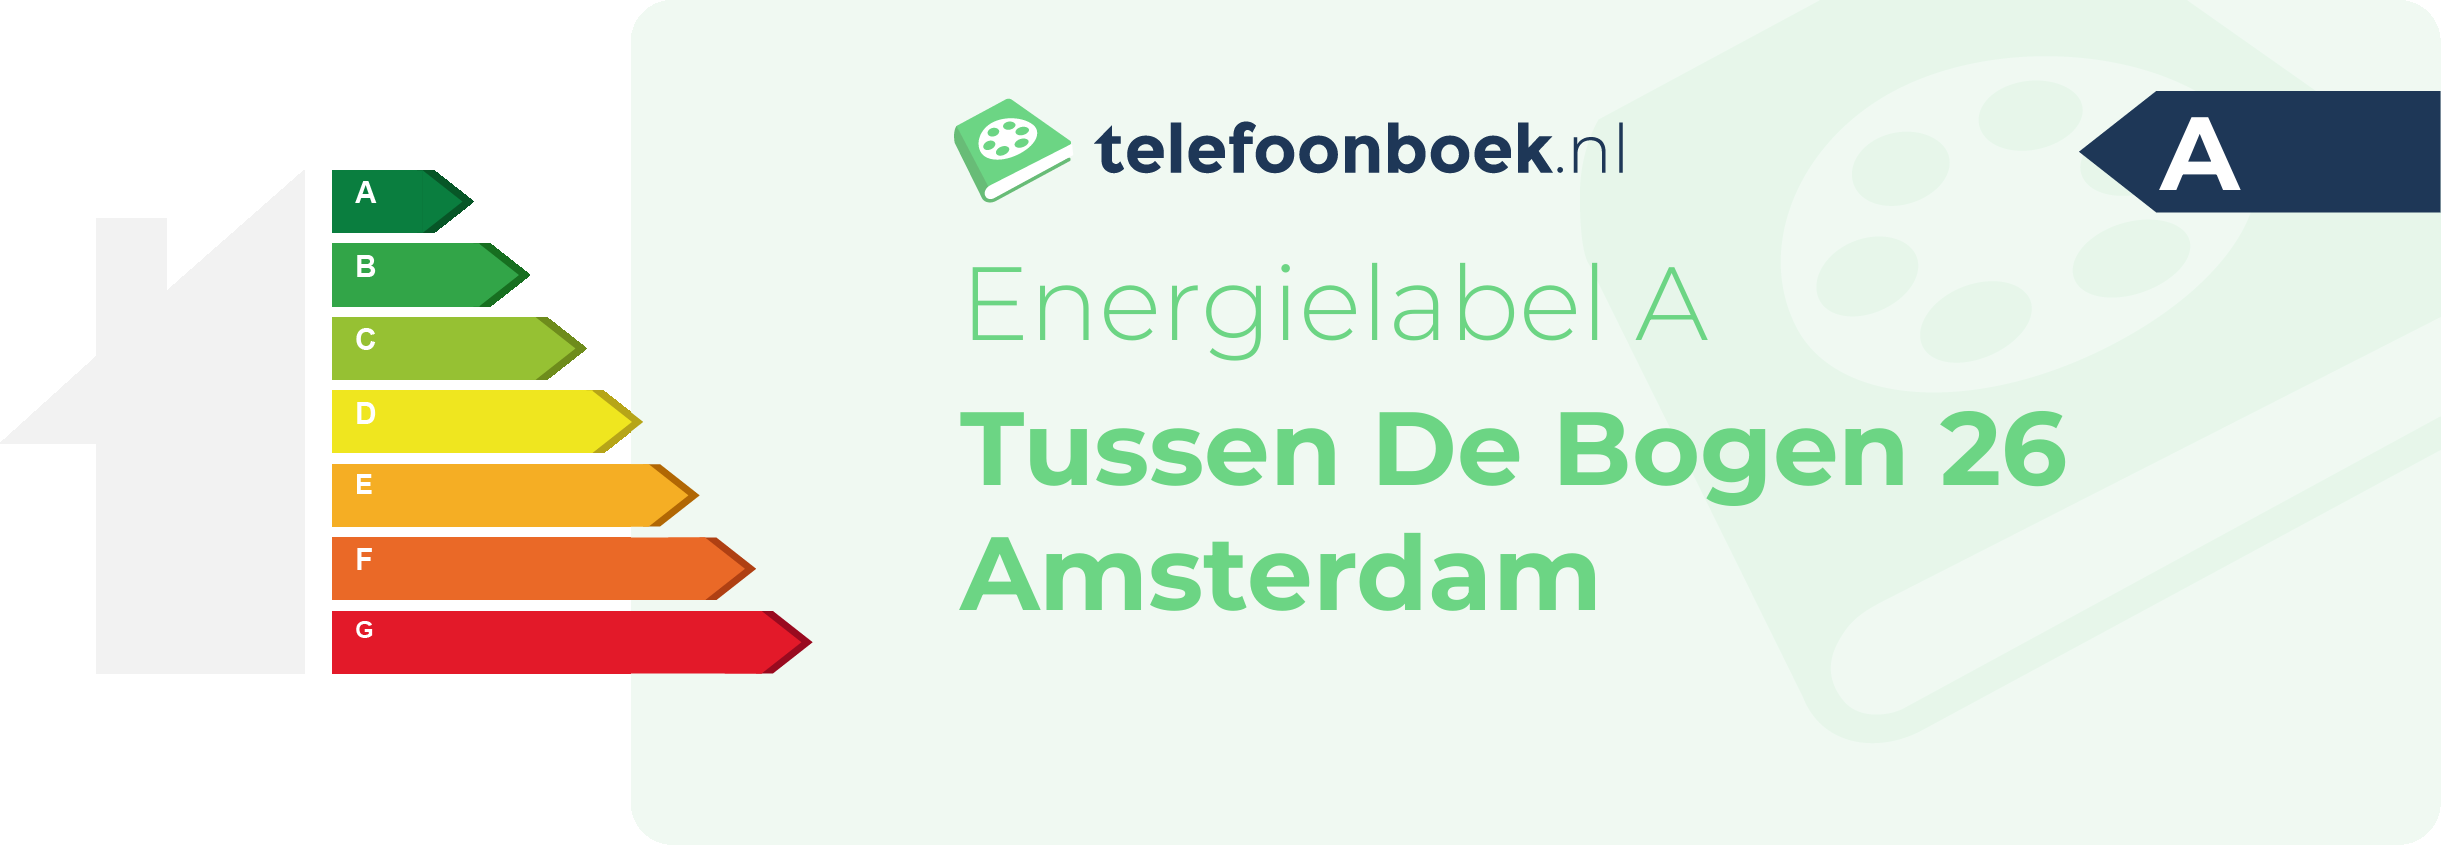 Energielabel Tussen De Bogen 26 Amsterdam